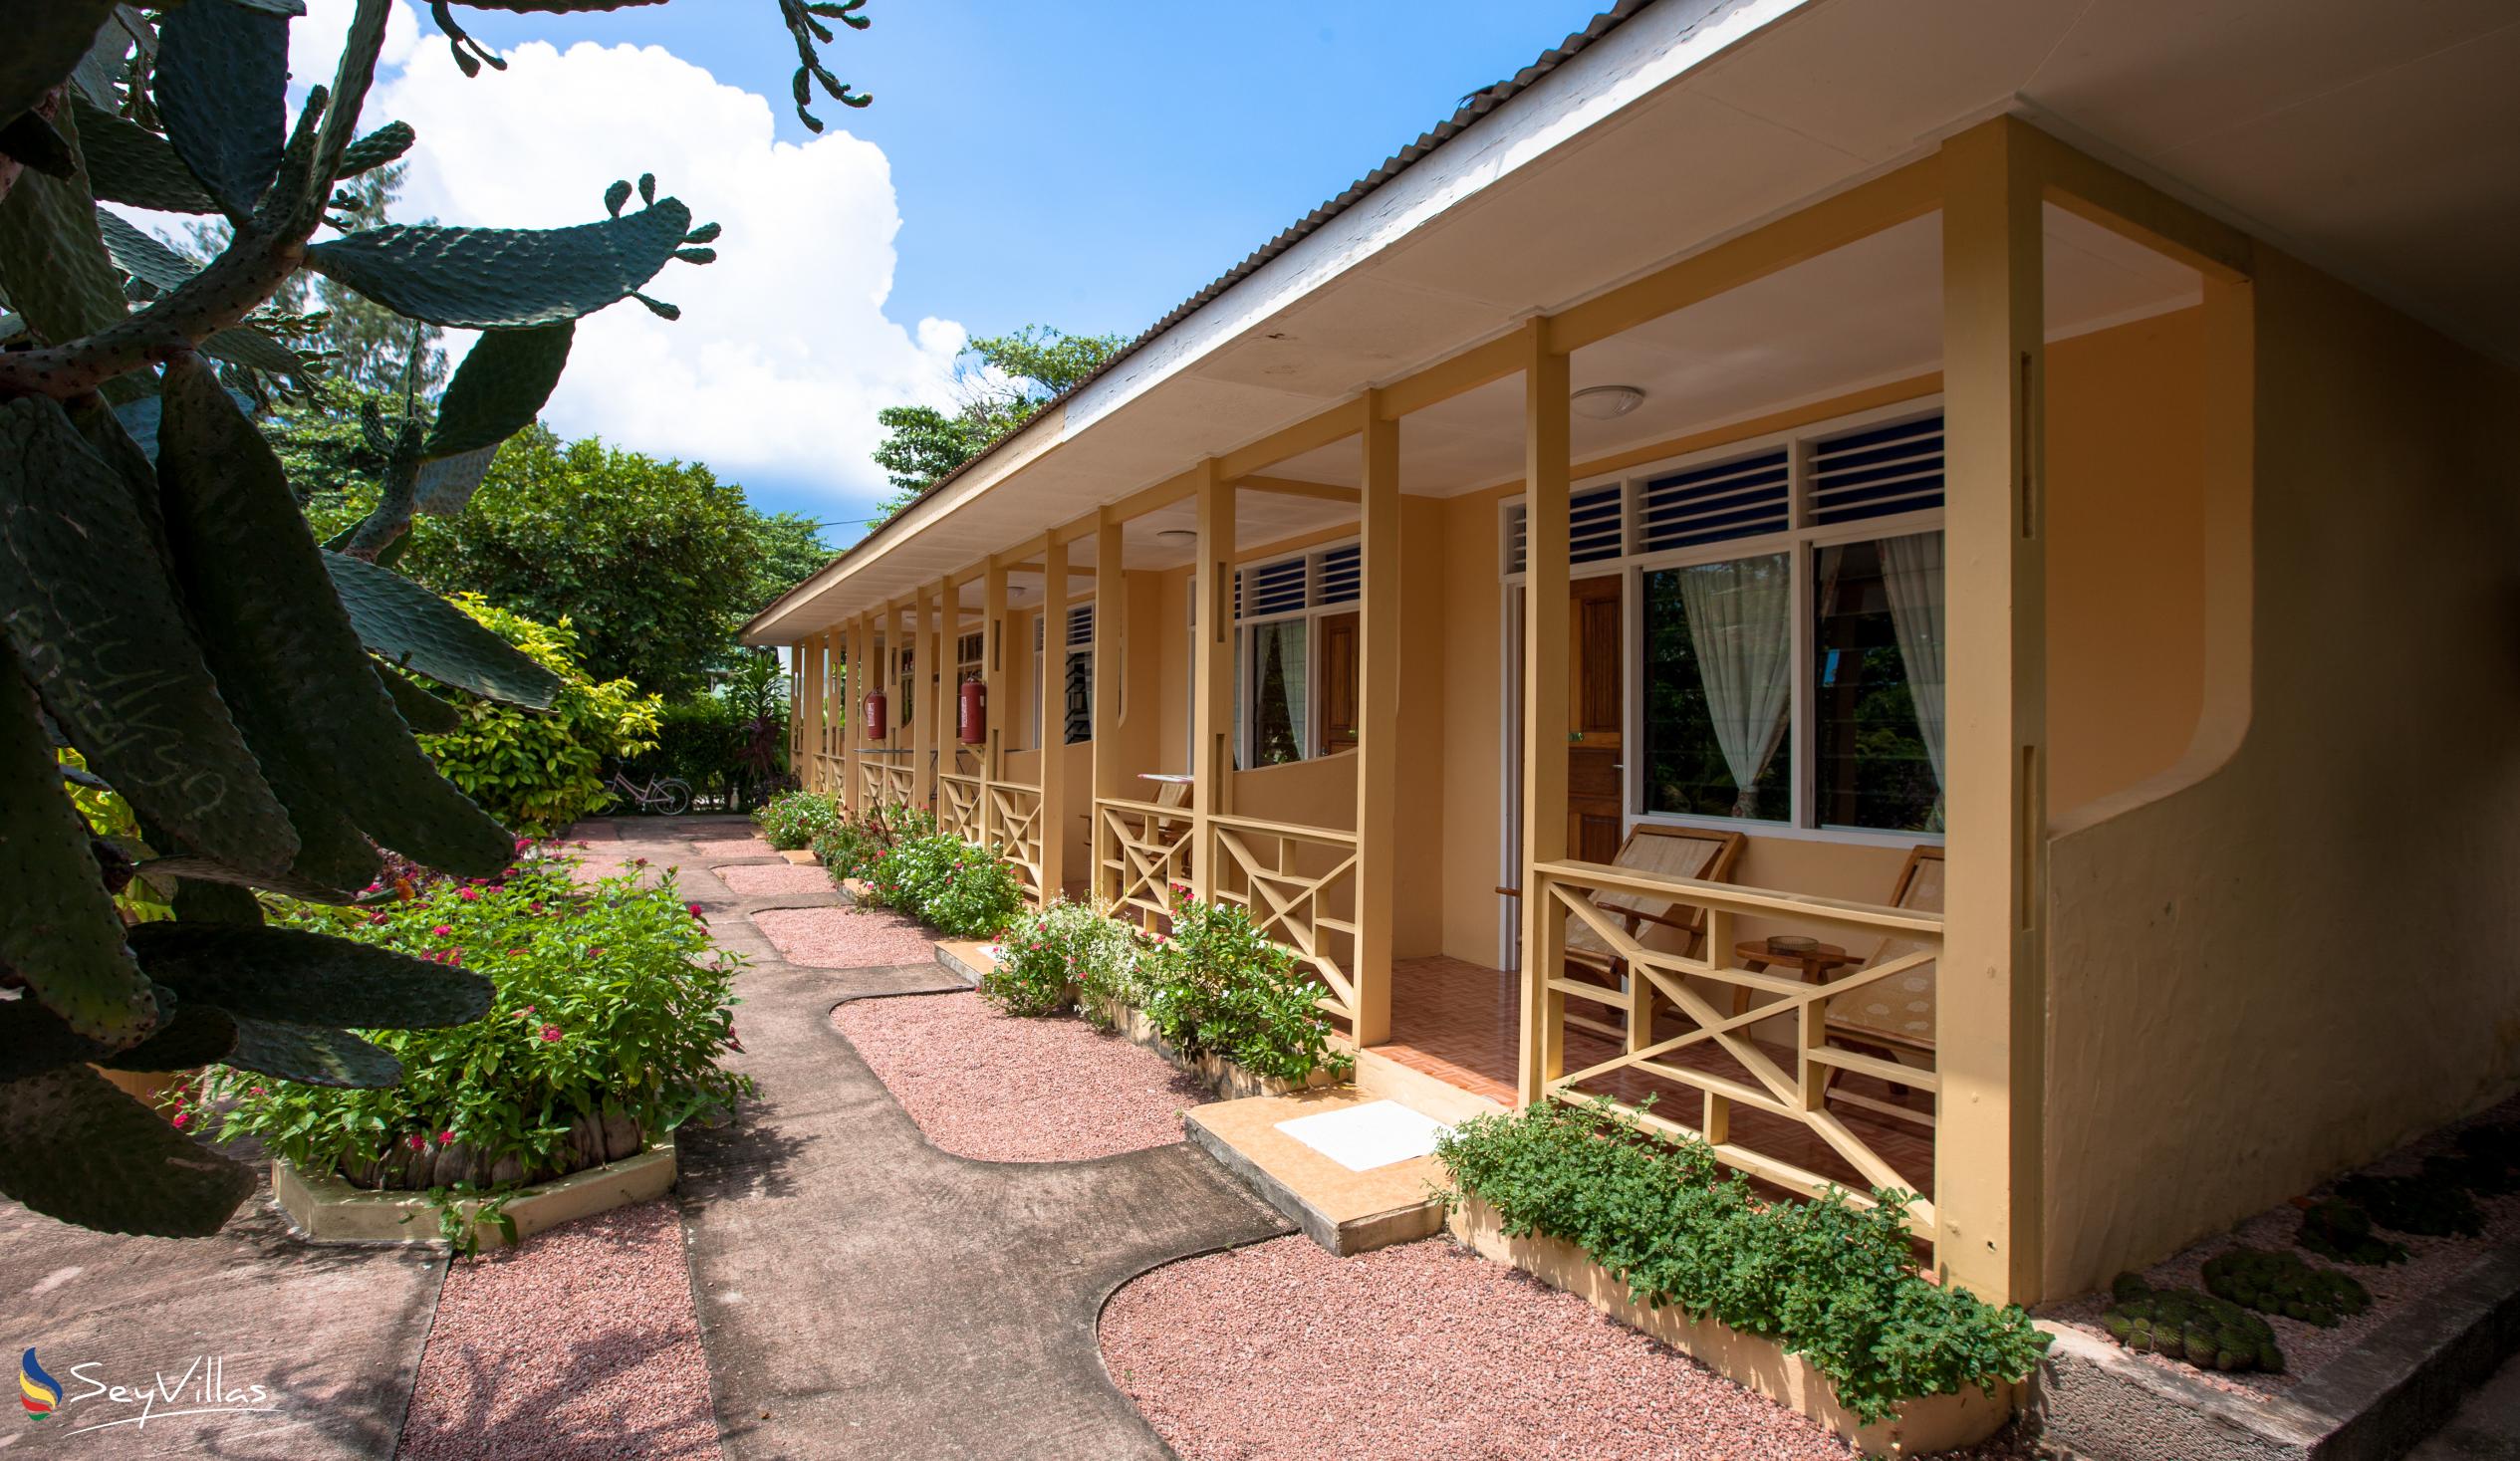 Foto 4: Chez Marston - Aussenbereich - La Digue (Seychellen)